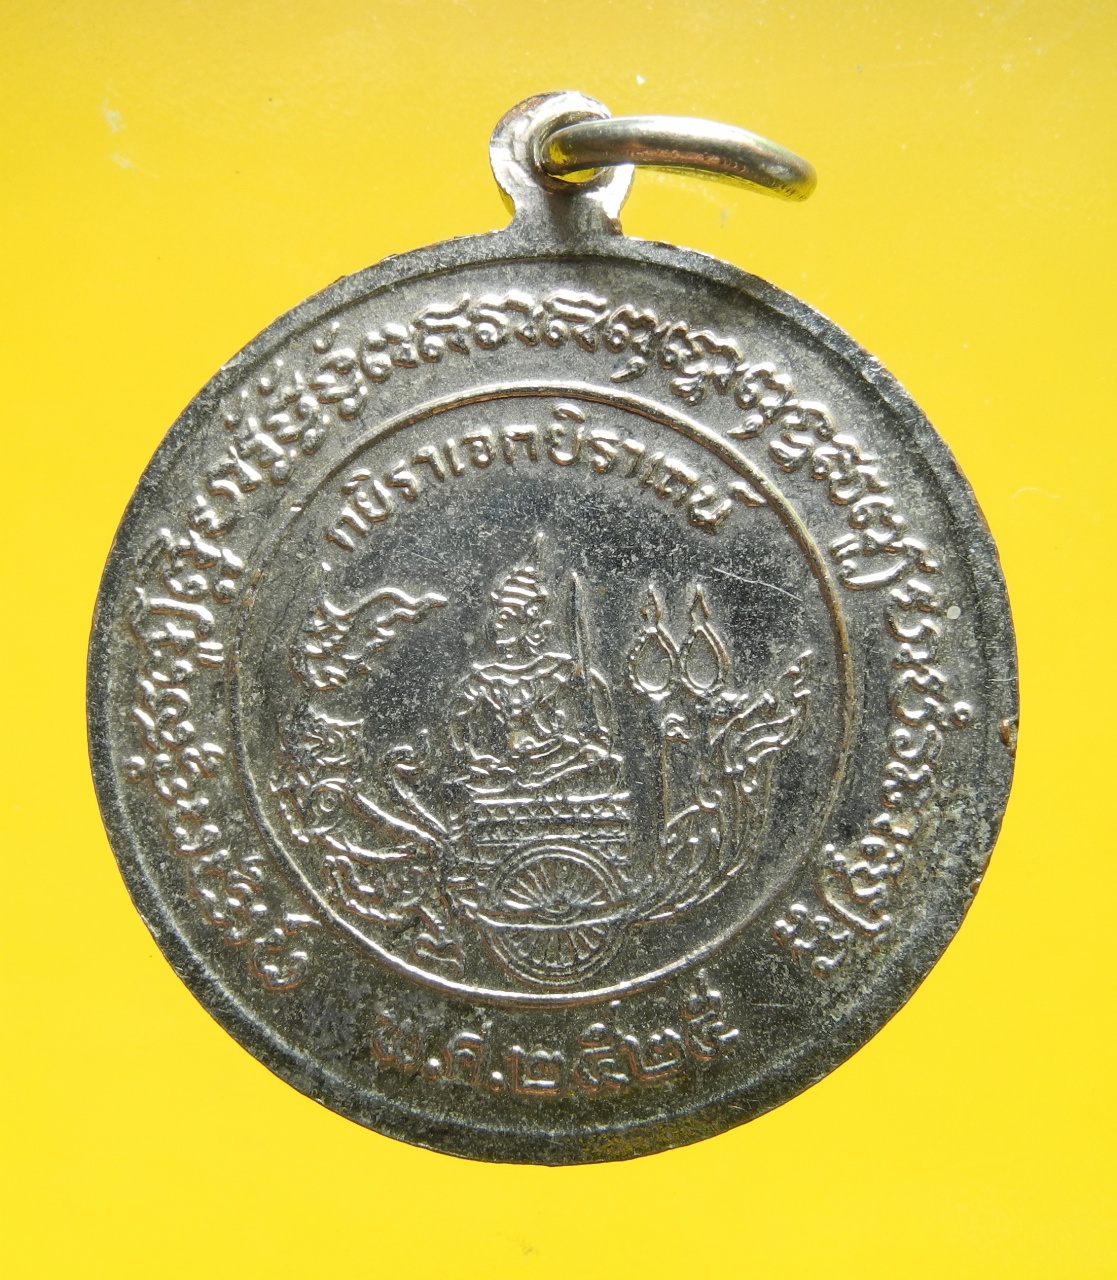 ภาพที่ 2 เหรียญกรมหลวงชุมพร ที่ระลึกแห่งเขาธงชัย ปี2525